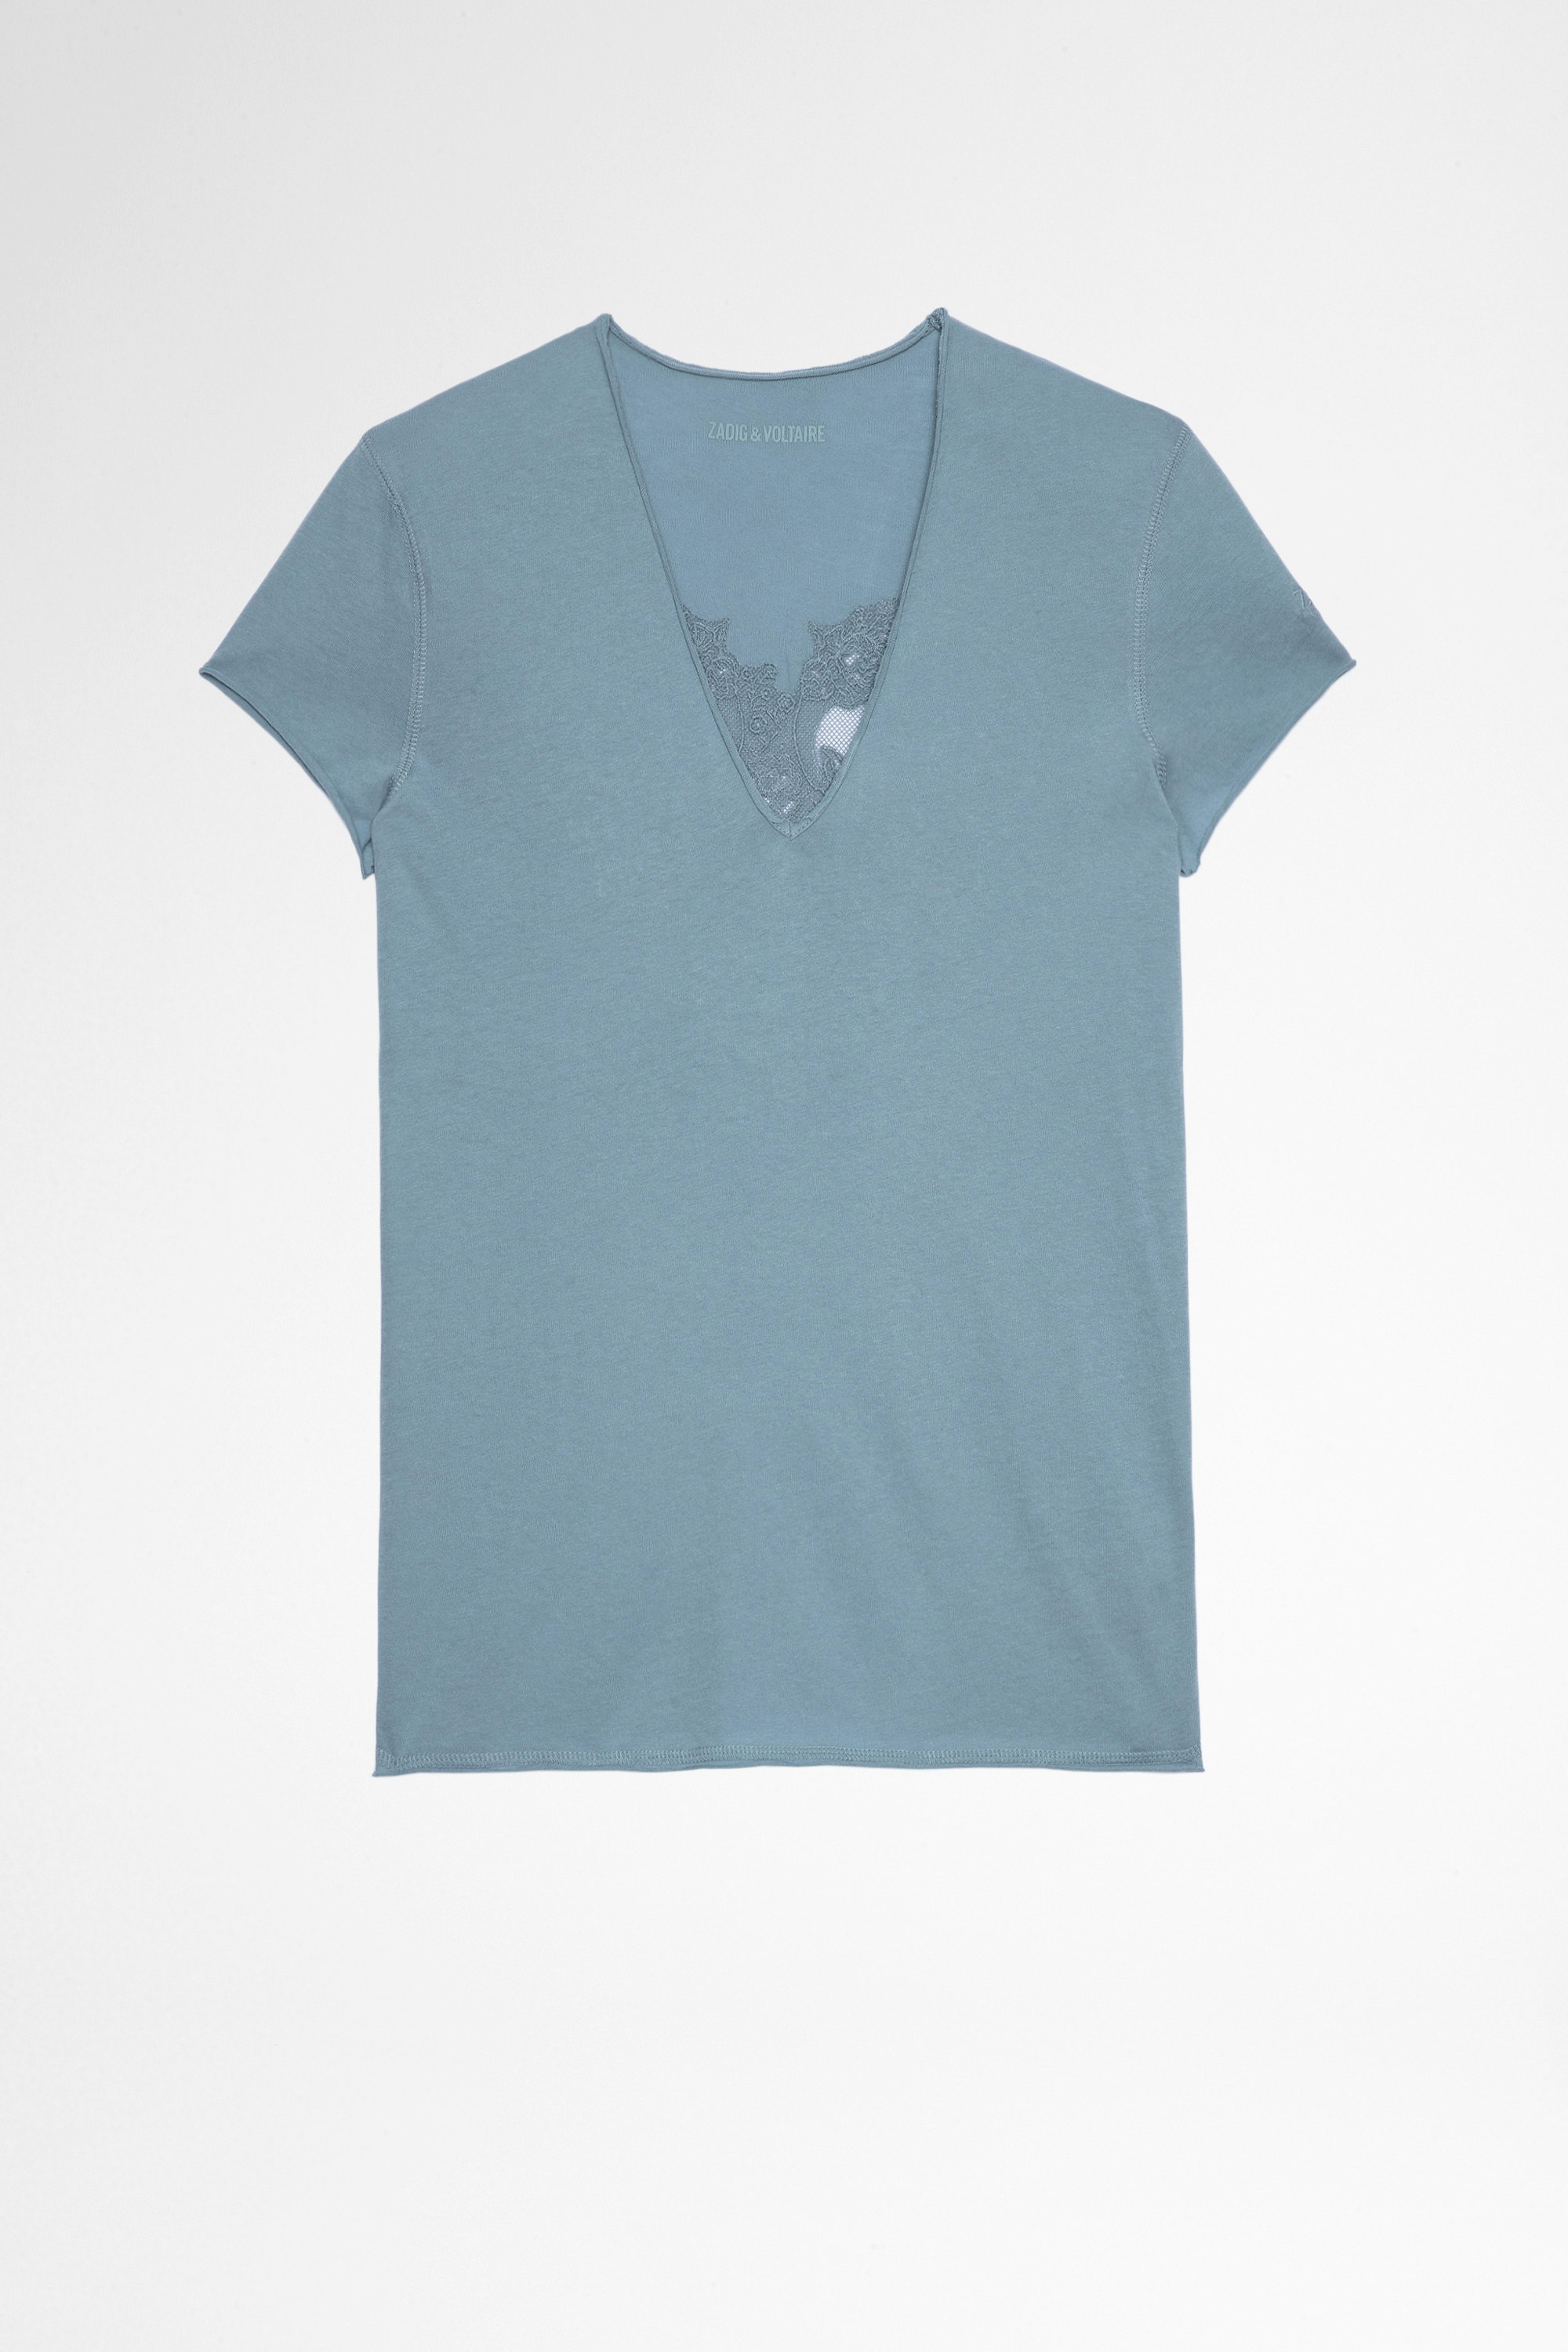 Camiseta Story Fishnet Double Heart Camiseta azul cielo de algodón con calaveras transparentes en la espalda